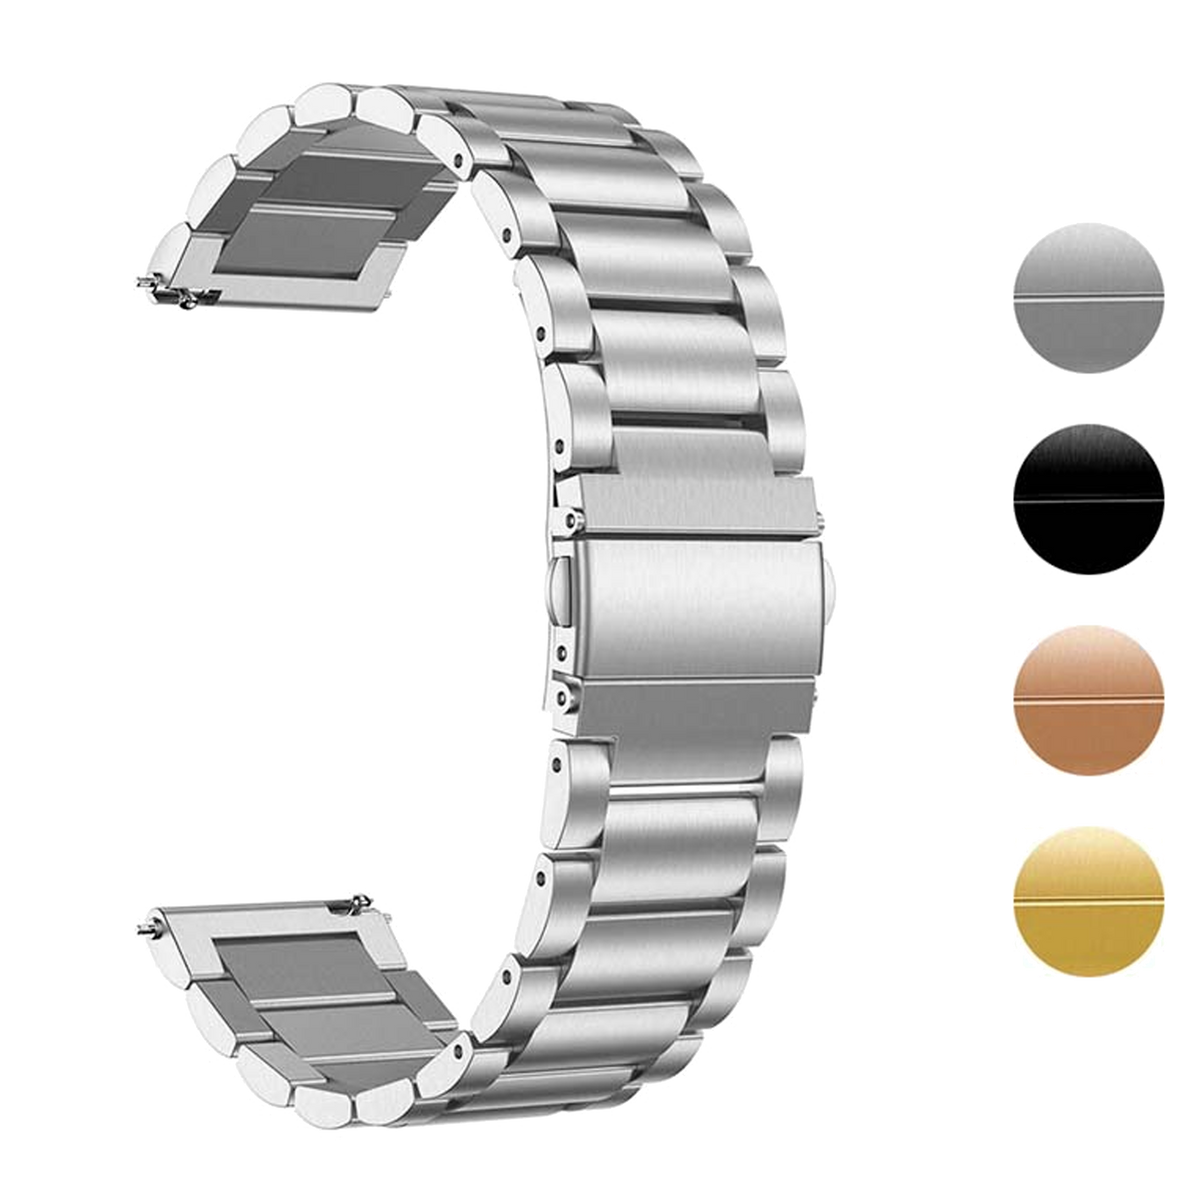 STRAPSCO - Stainless Steel Bracelet